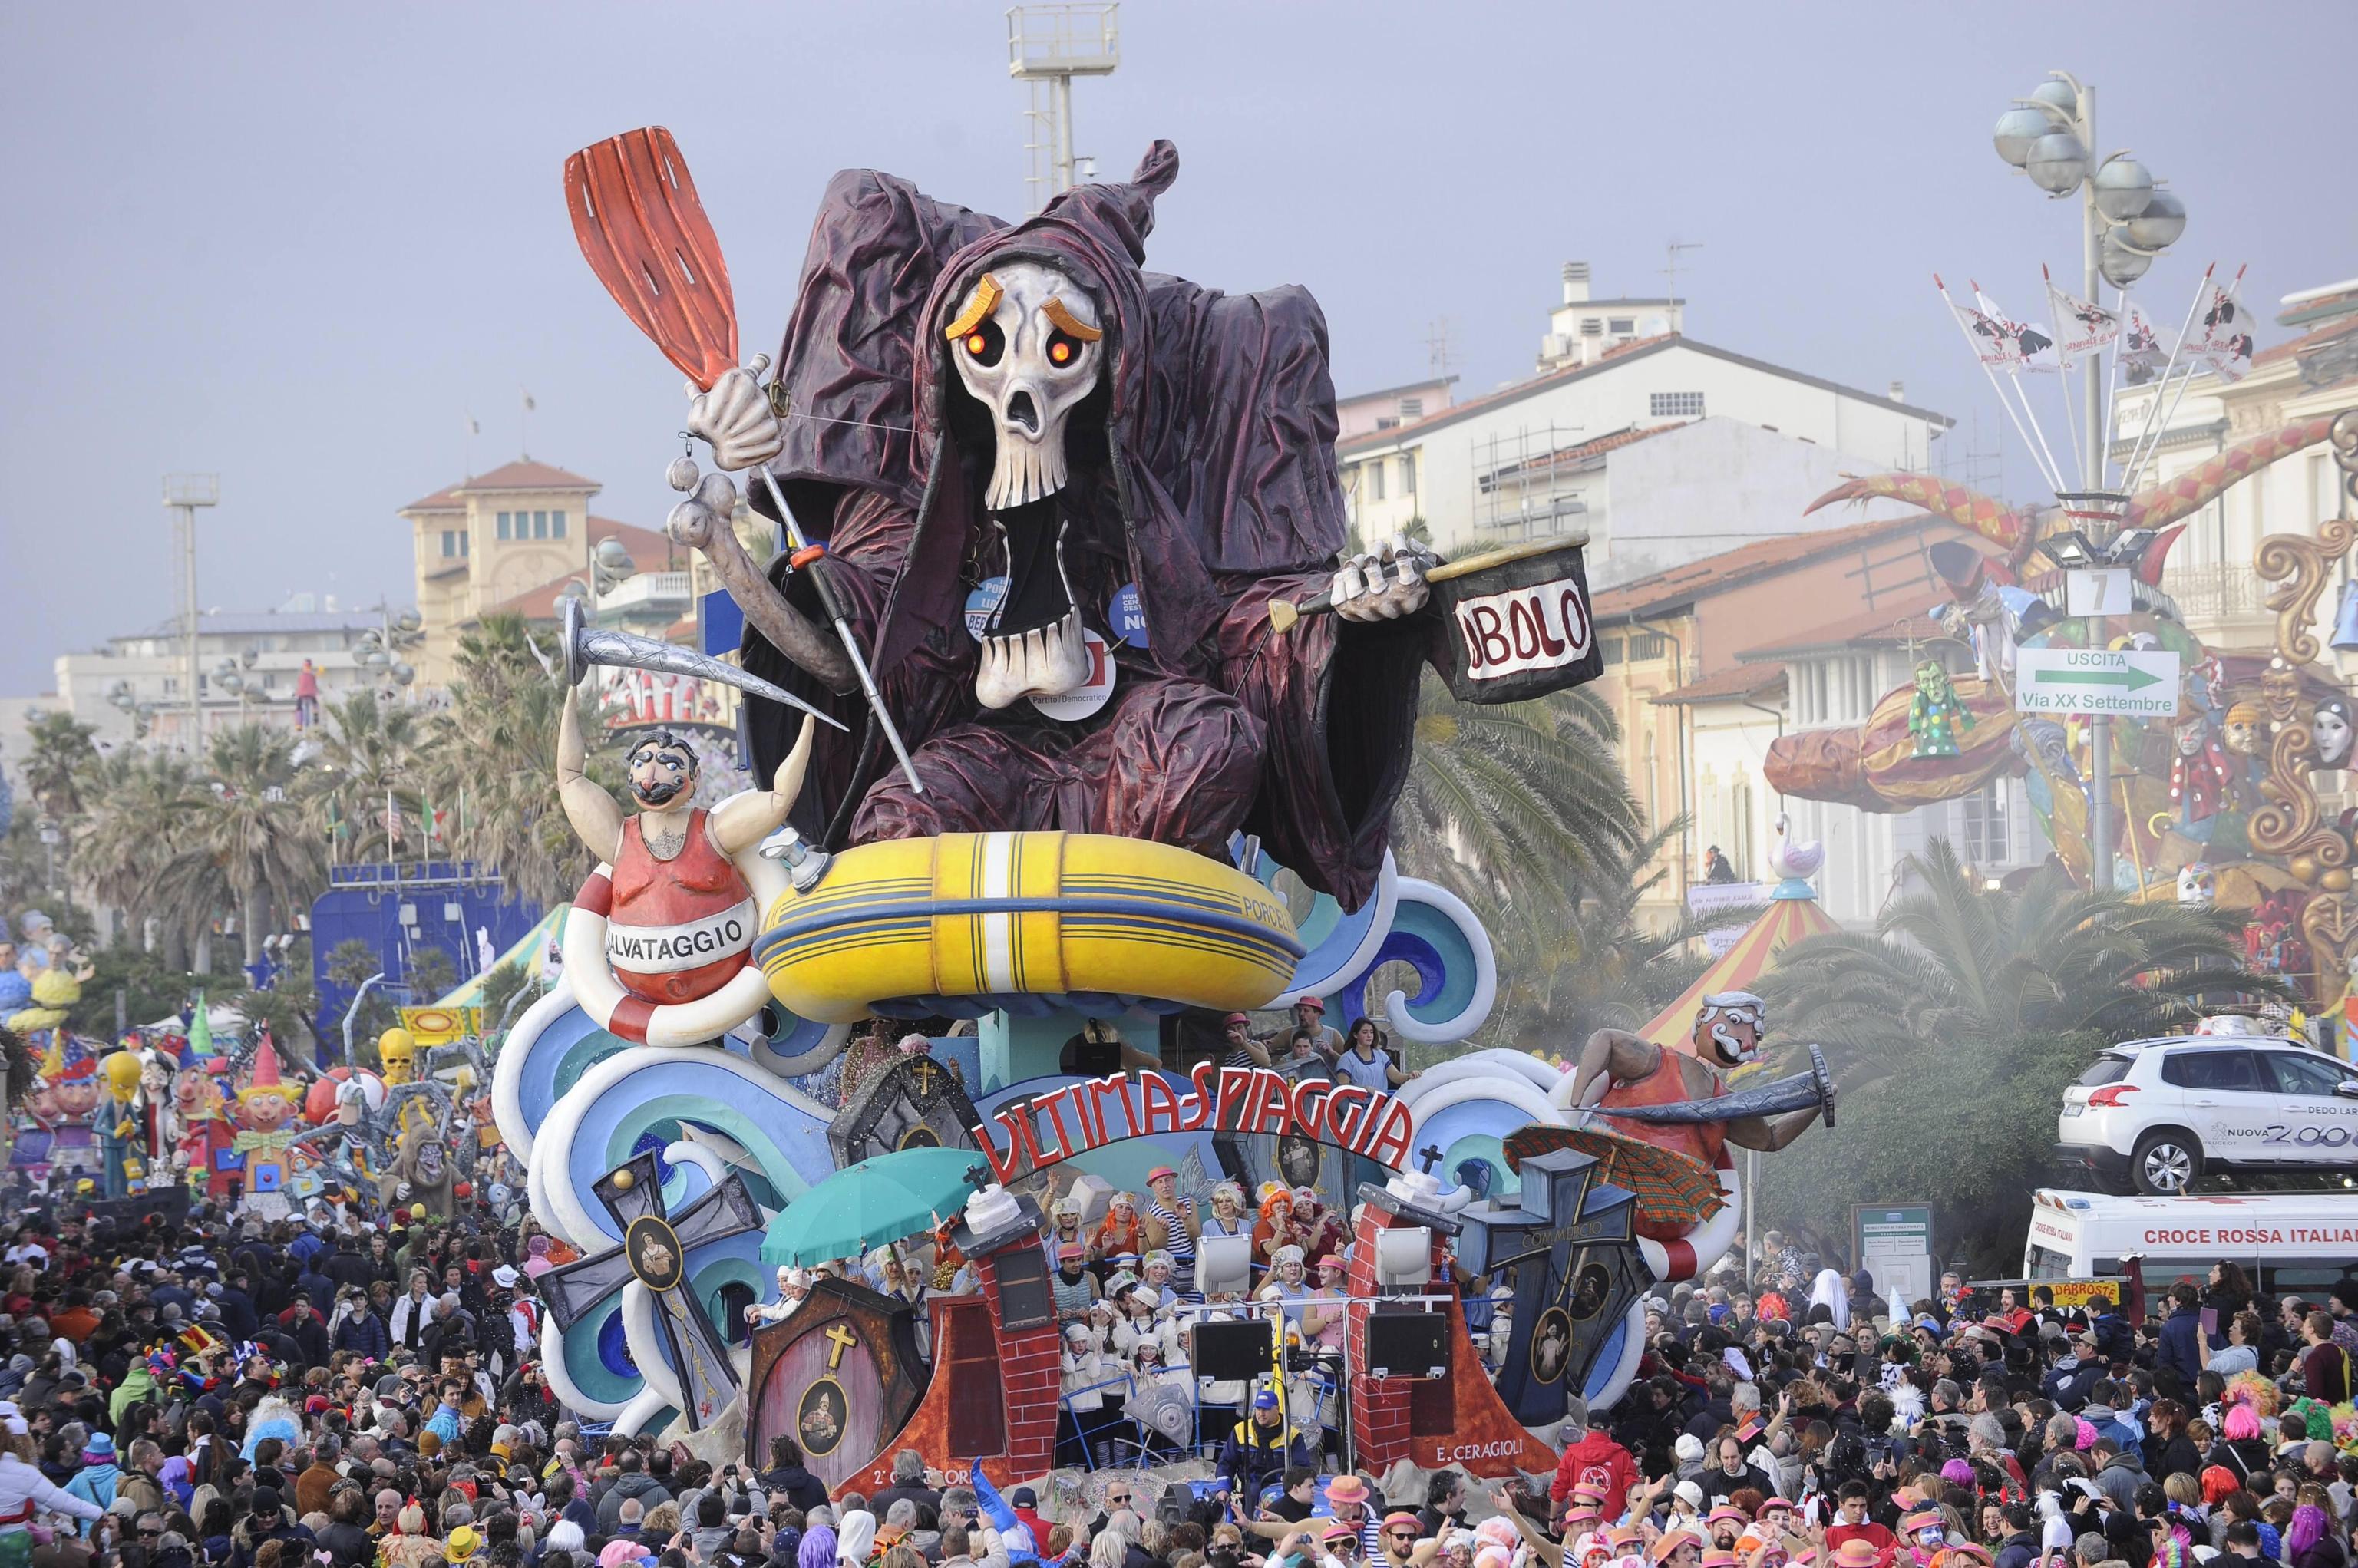 Viareggio carnival parade